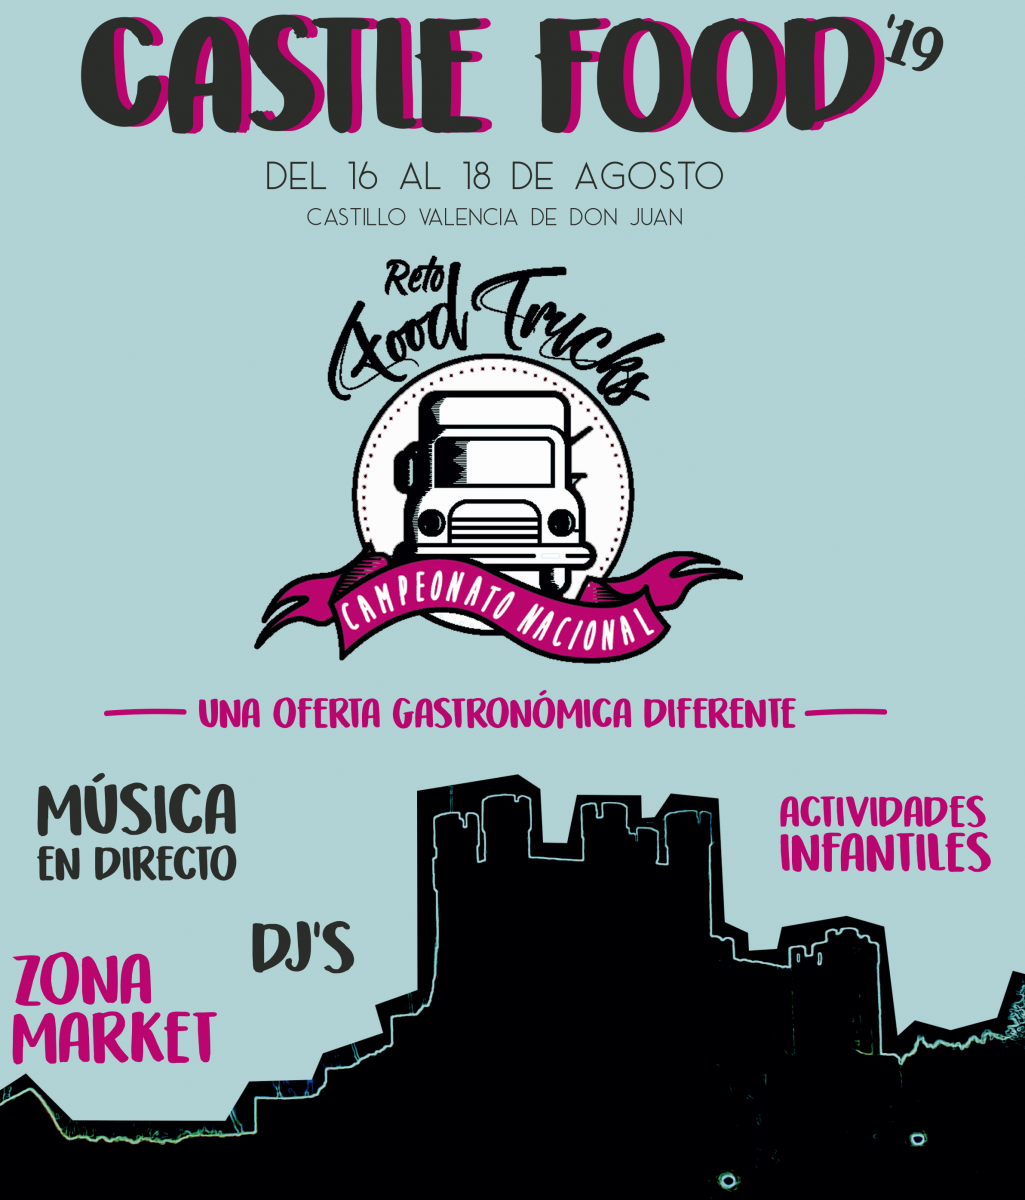 Primera edición del Castle Food que se celebrará en Valencia de Don Juan.